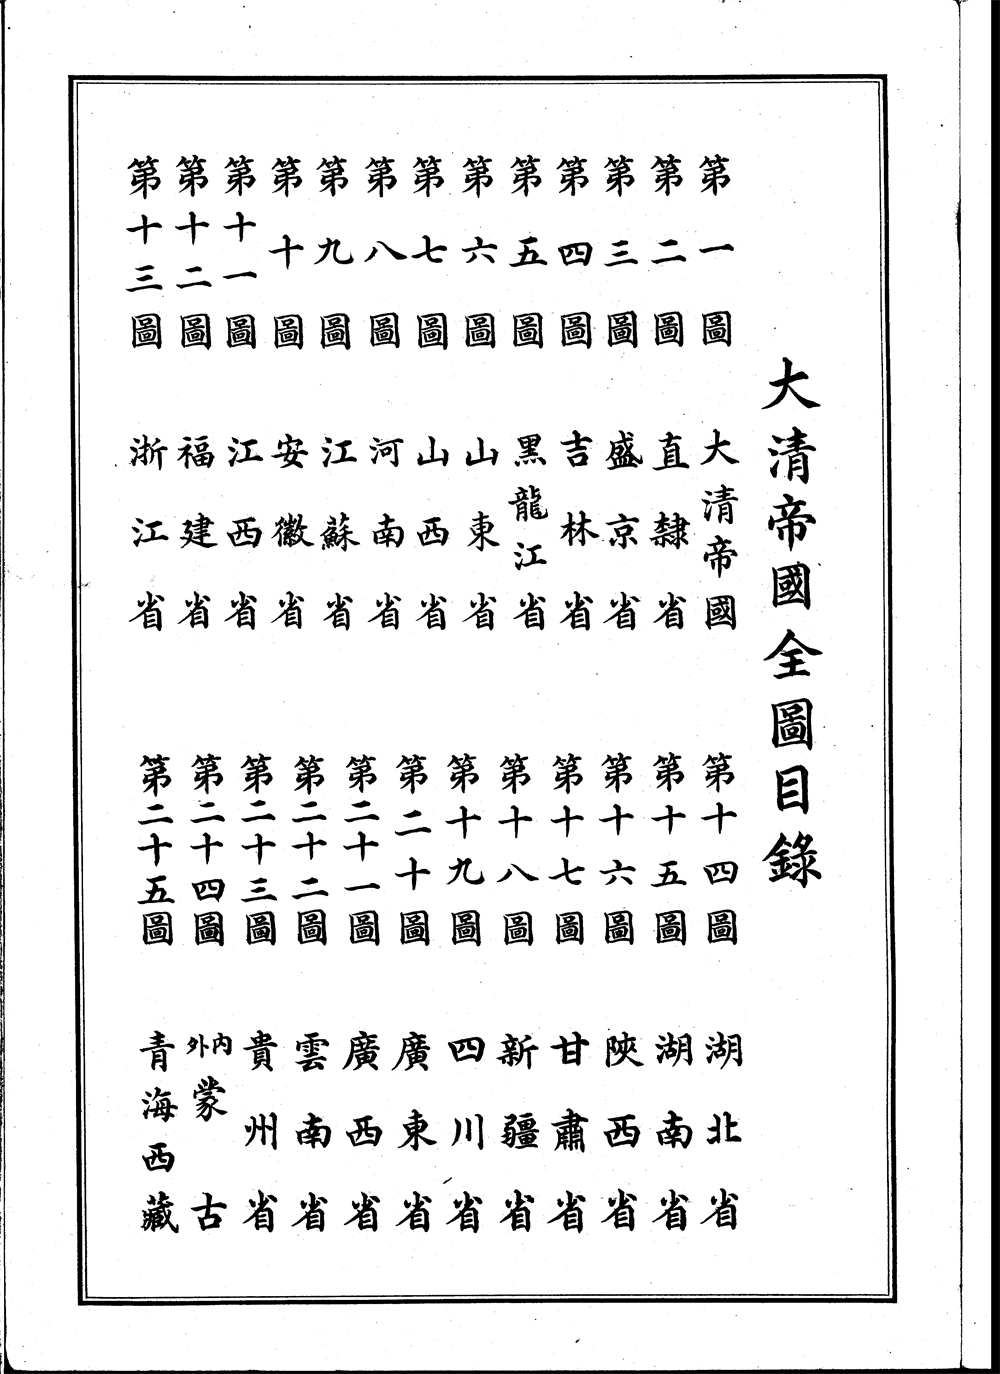 1909年大清帝国全图目录.jpg